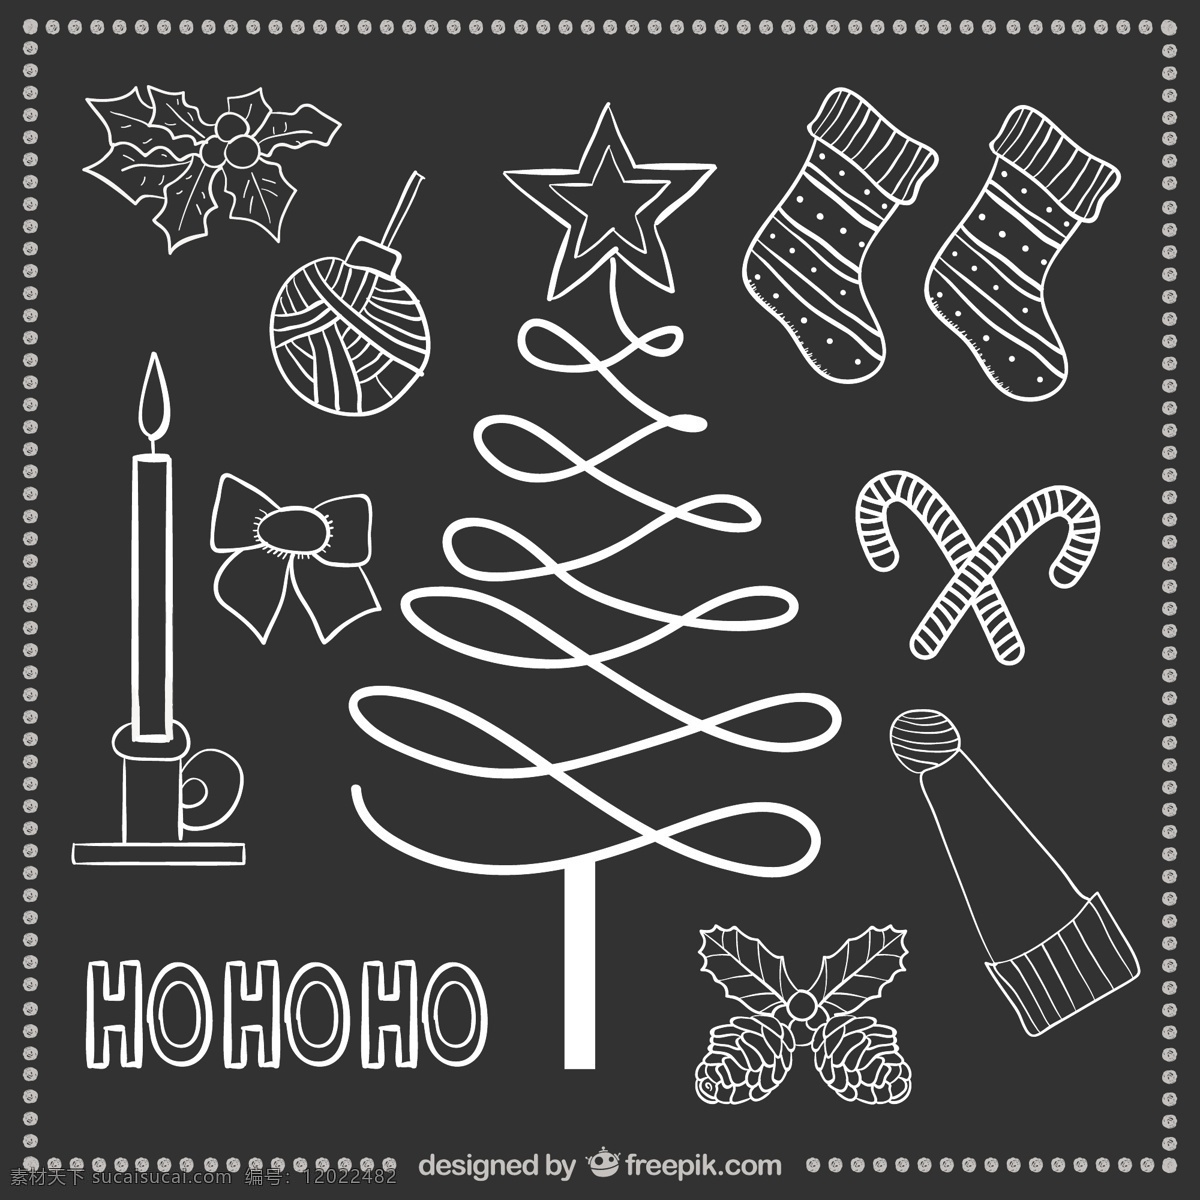 手工 绘制 圣诞 元素 黑板 上 圣诞树 一方面 新年快乐 新年 圣诞快乐 冬天 手绘 快乐 糖果 庆祝活动 新的节日 蜡烛图 灰色